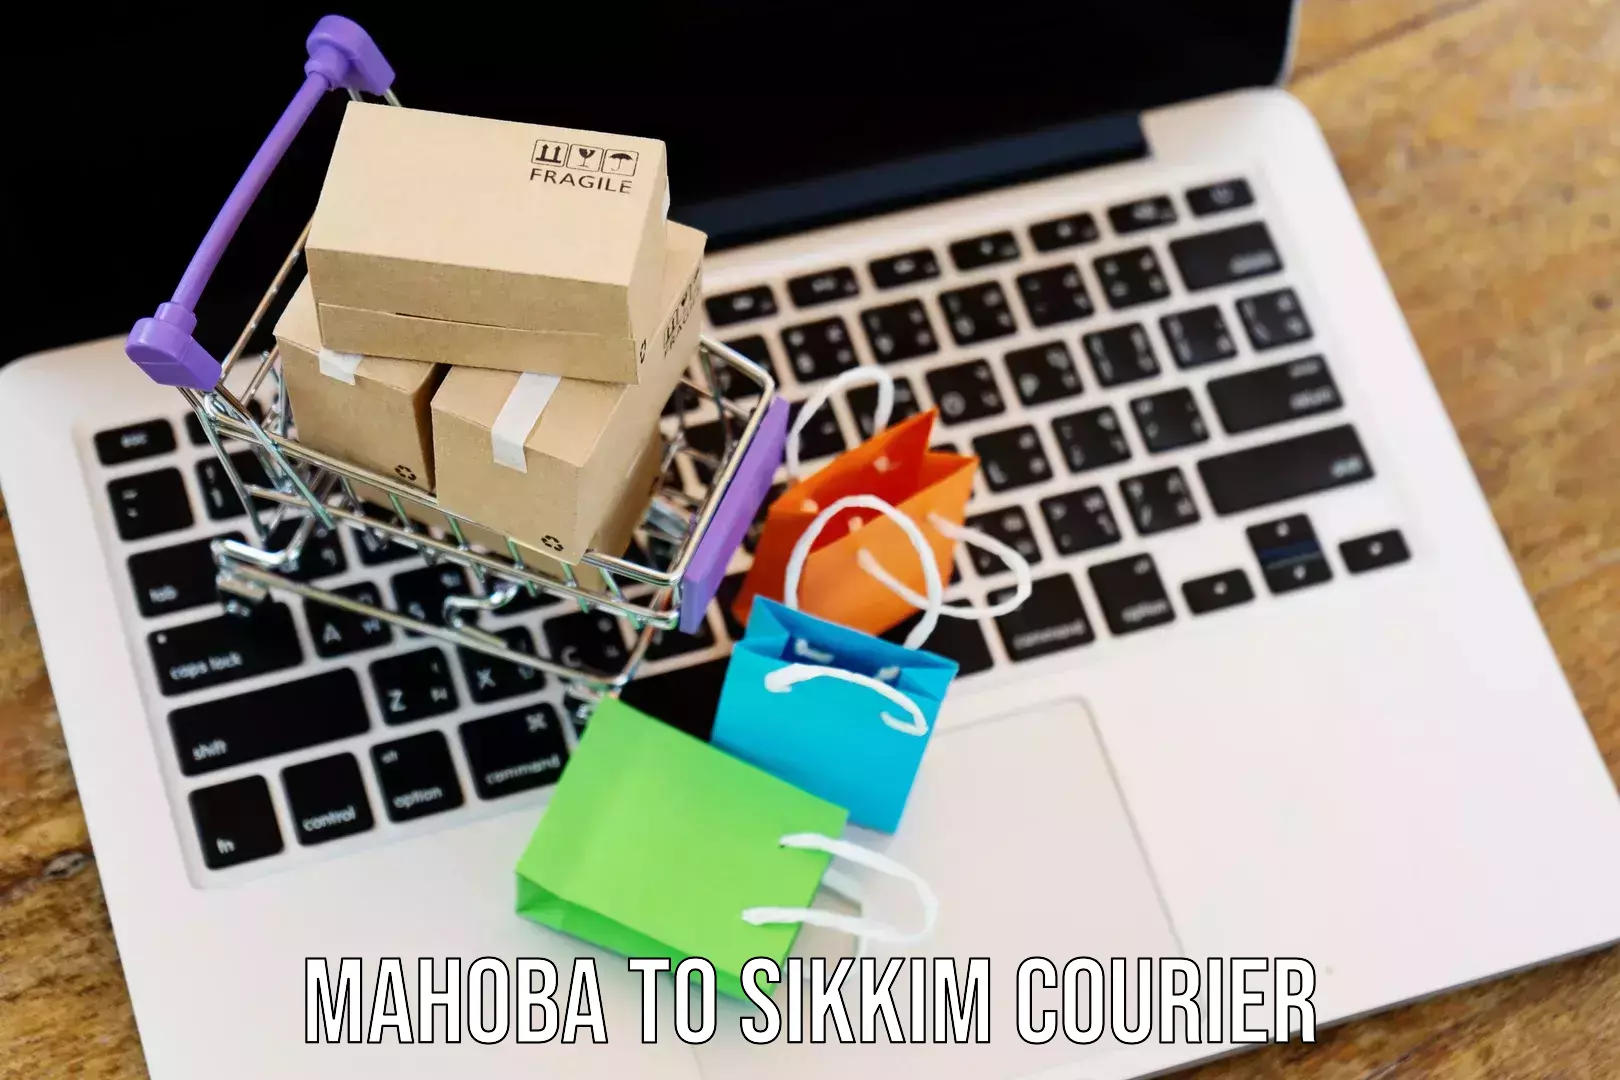 Business shipping needs Mahoba to Mangan